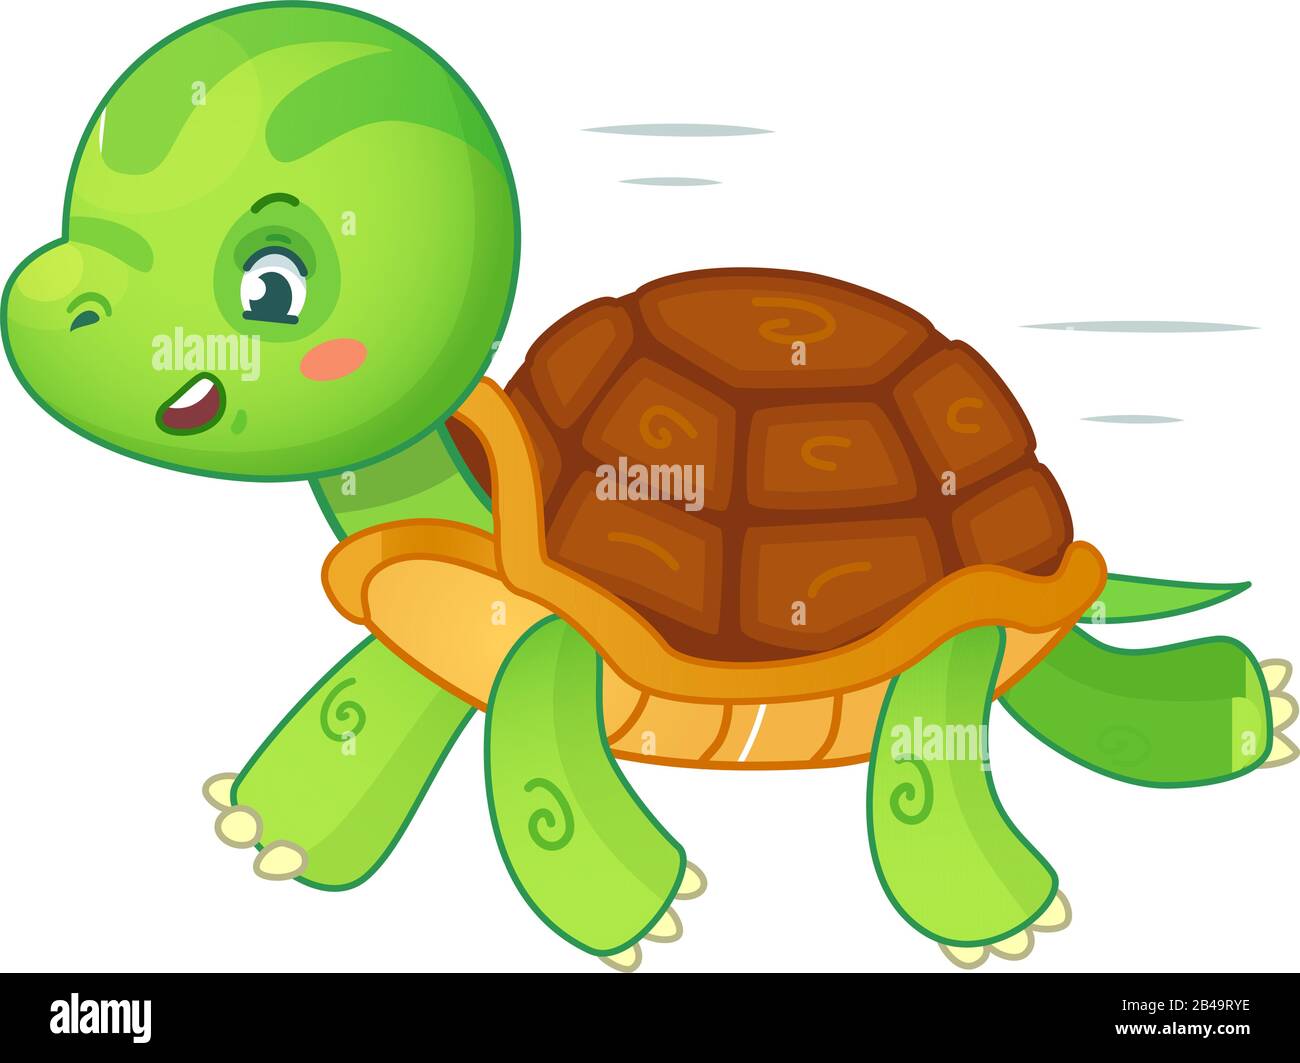 Illustration de la tortue, avec un vecteur de fond blanc Illustration de Vecteur